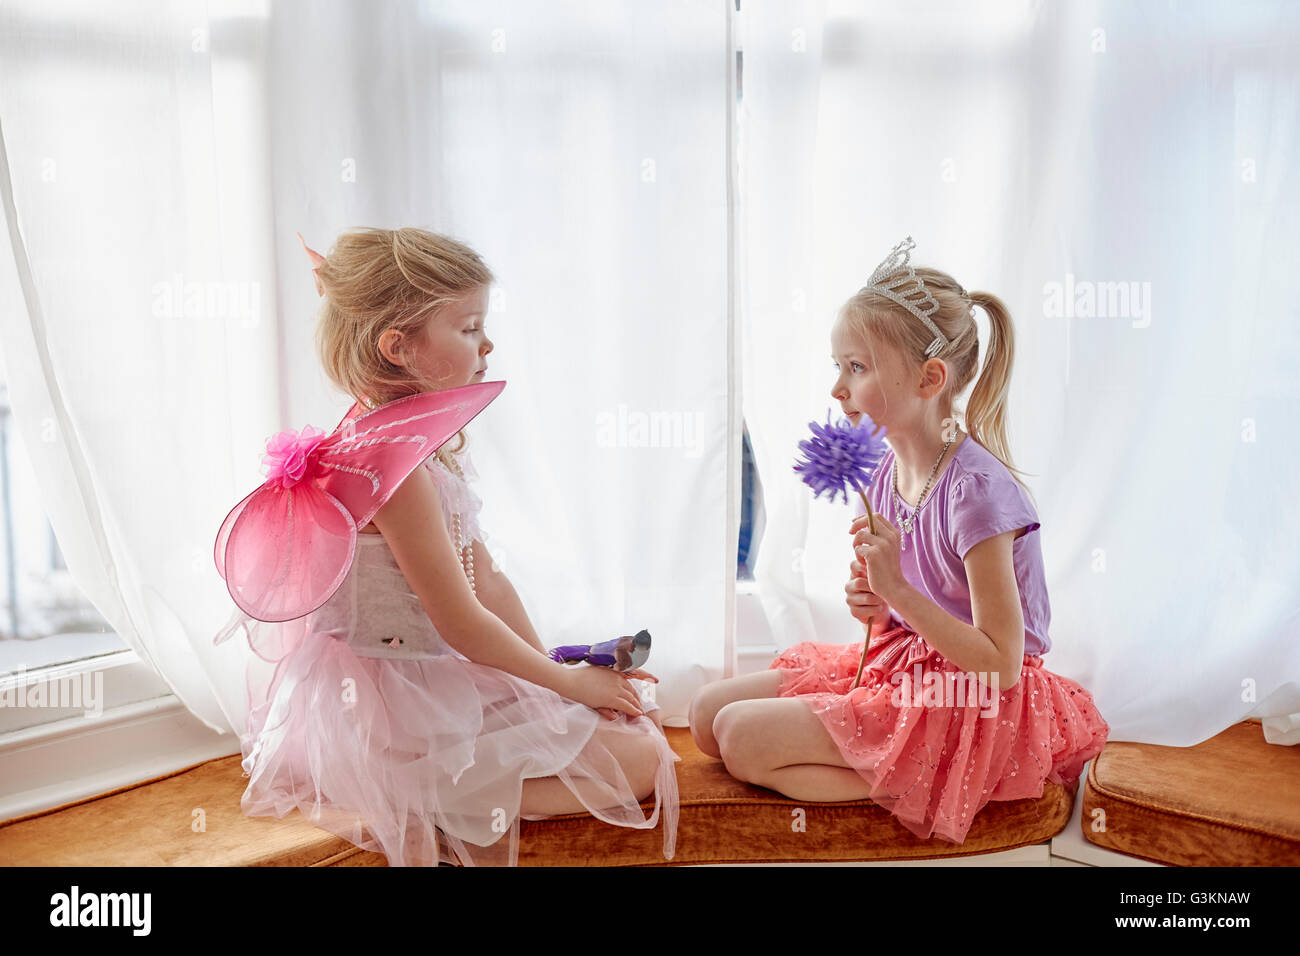 Zwei junge Mädchen verkleidet, Gesicht sitzen Stockfoto